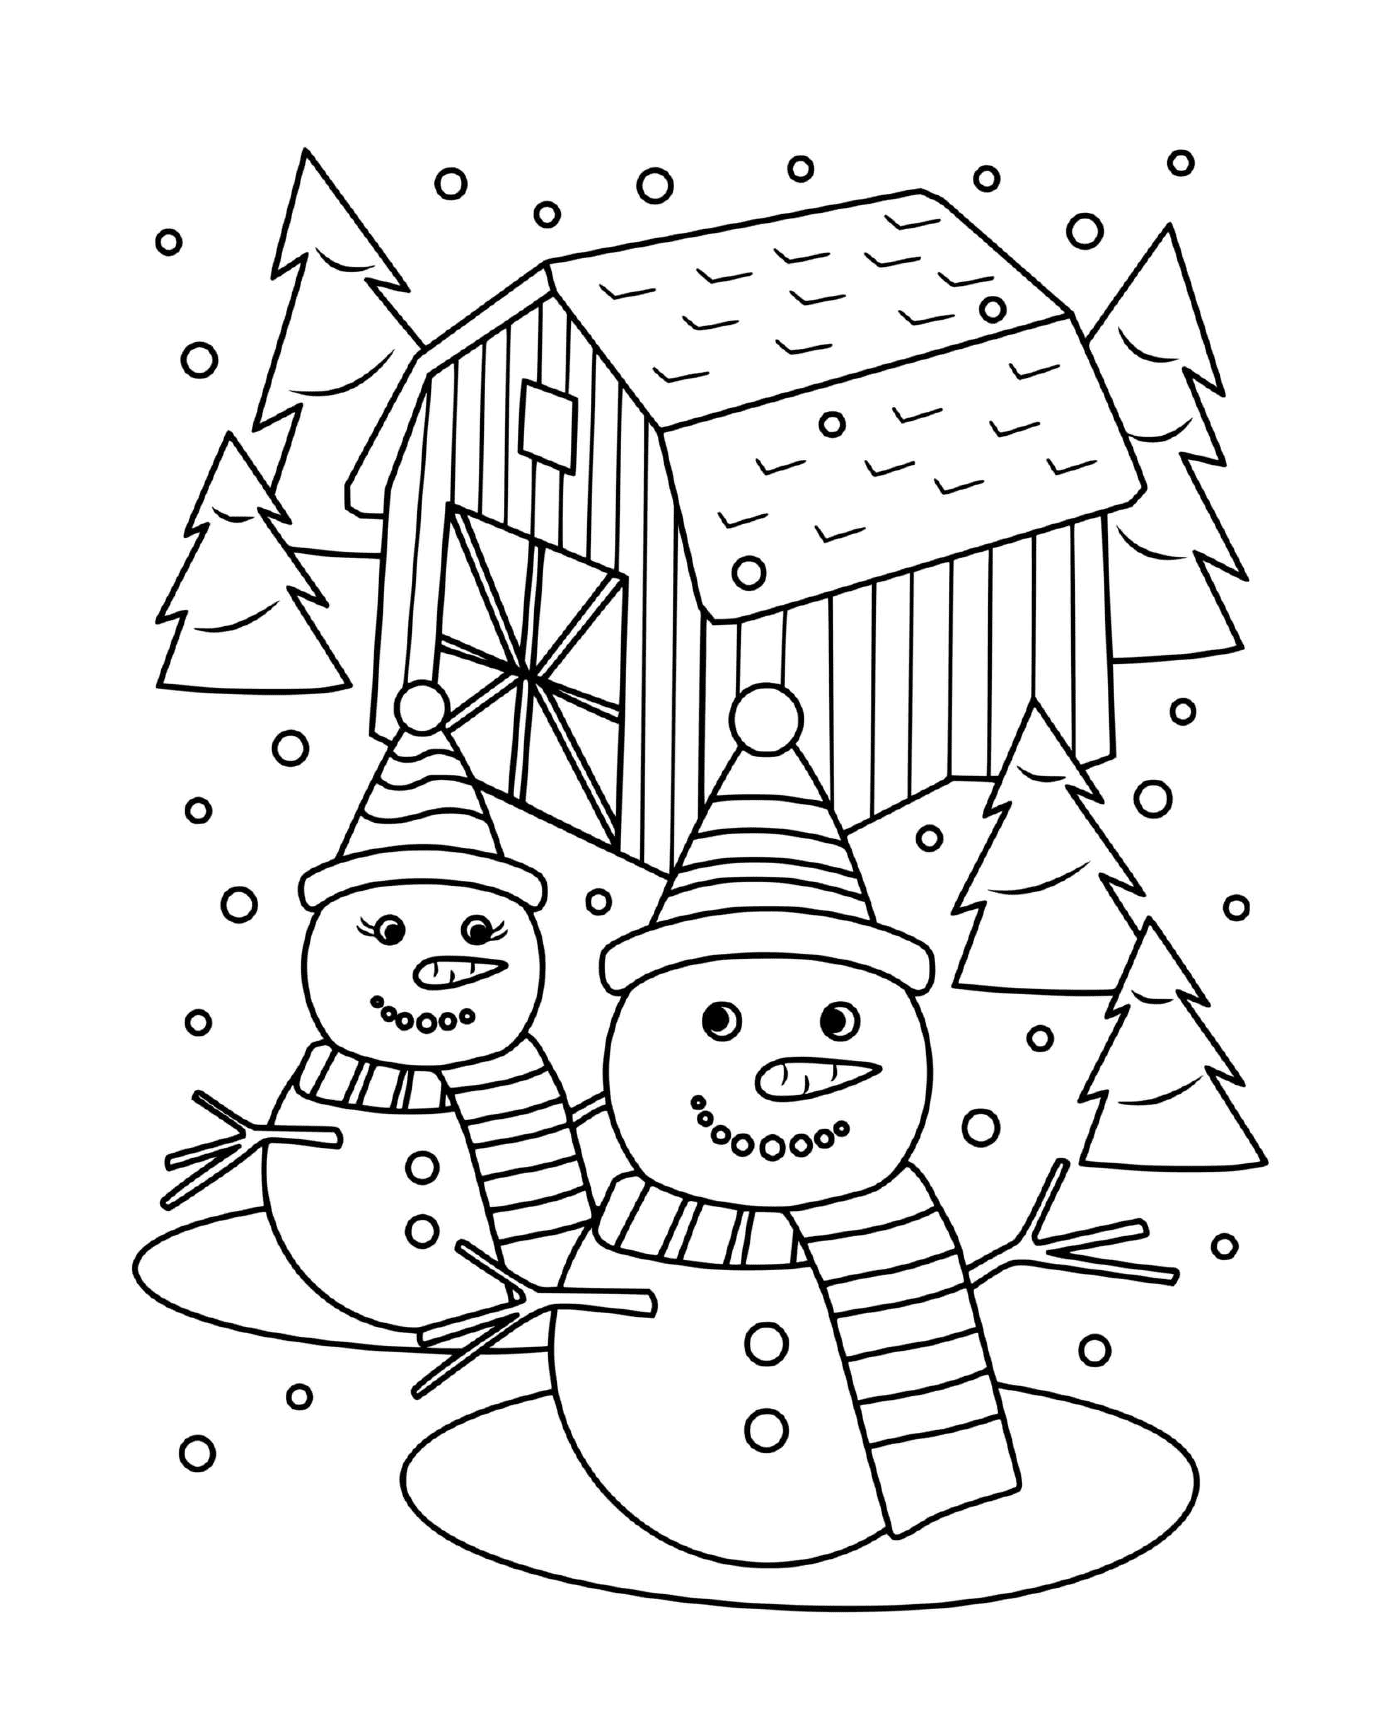  Снежный человек и снежная леди, окруженные деревьями 